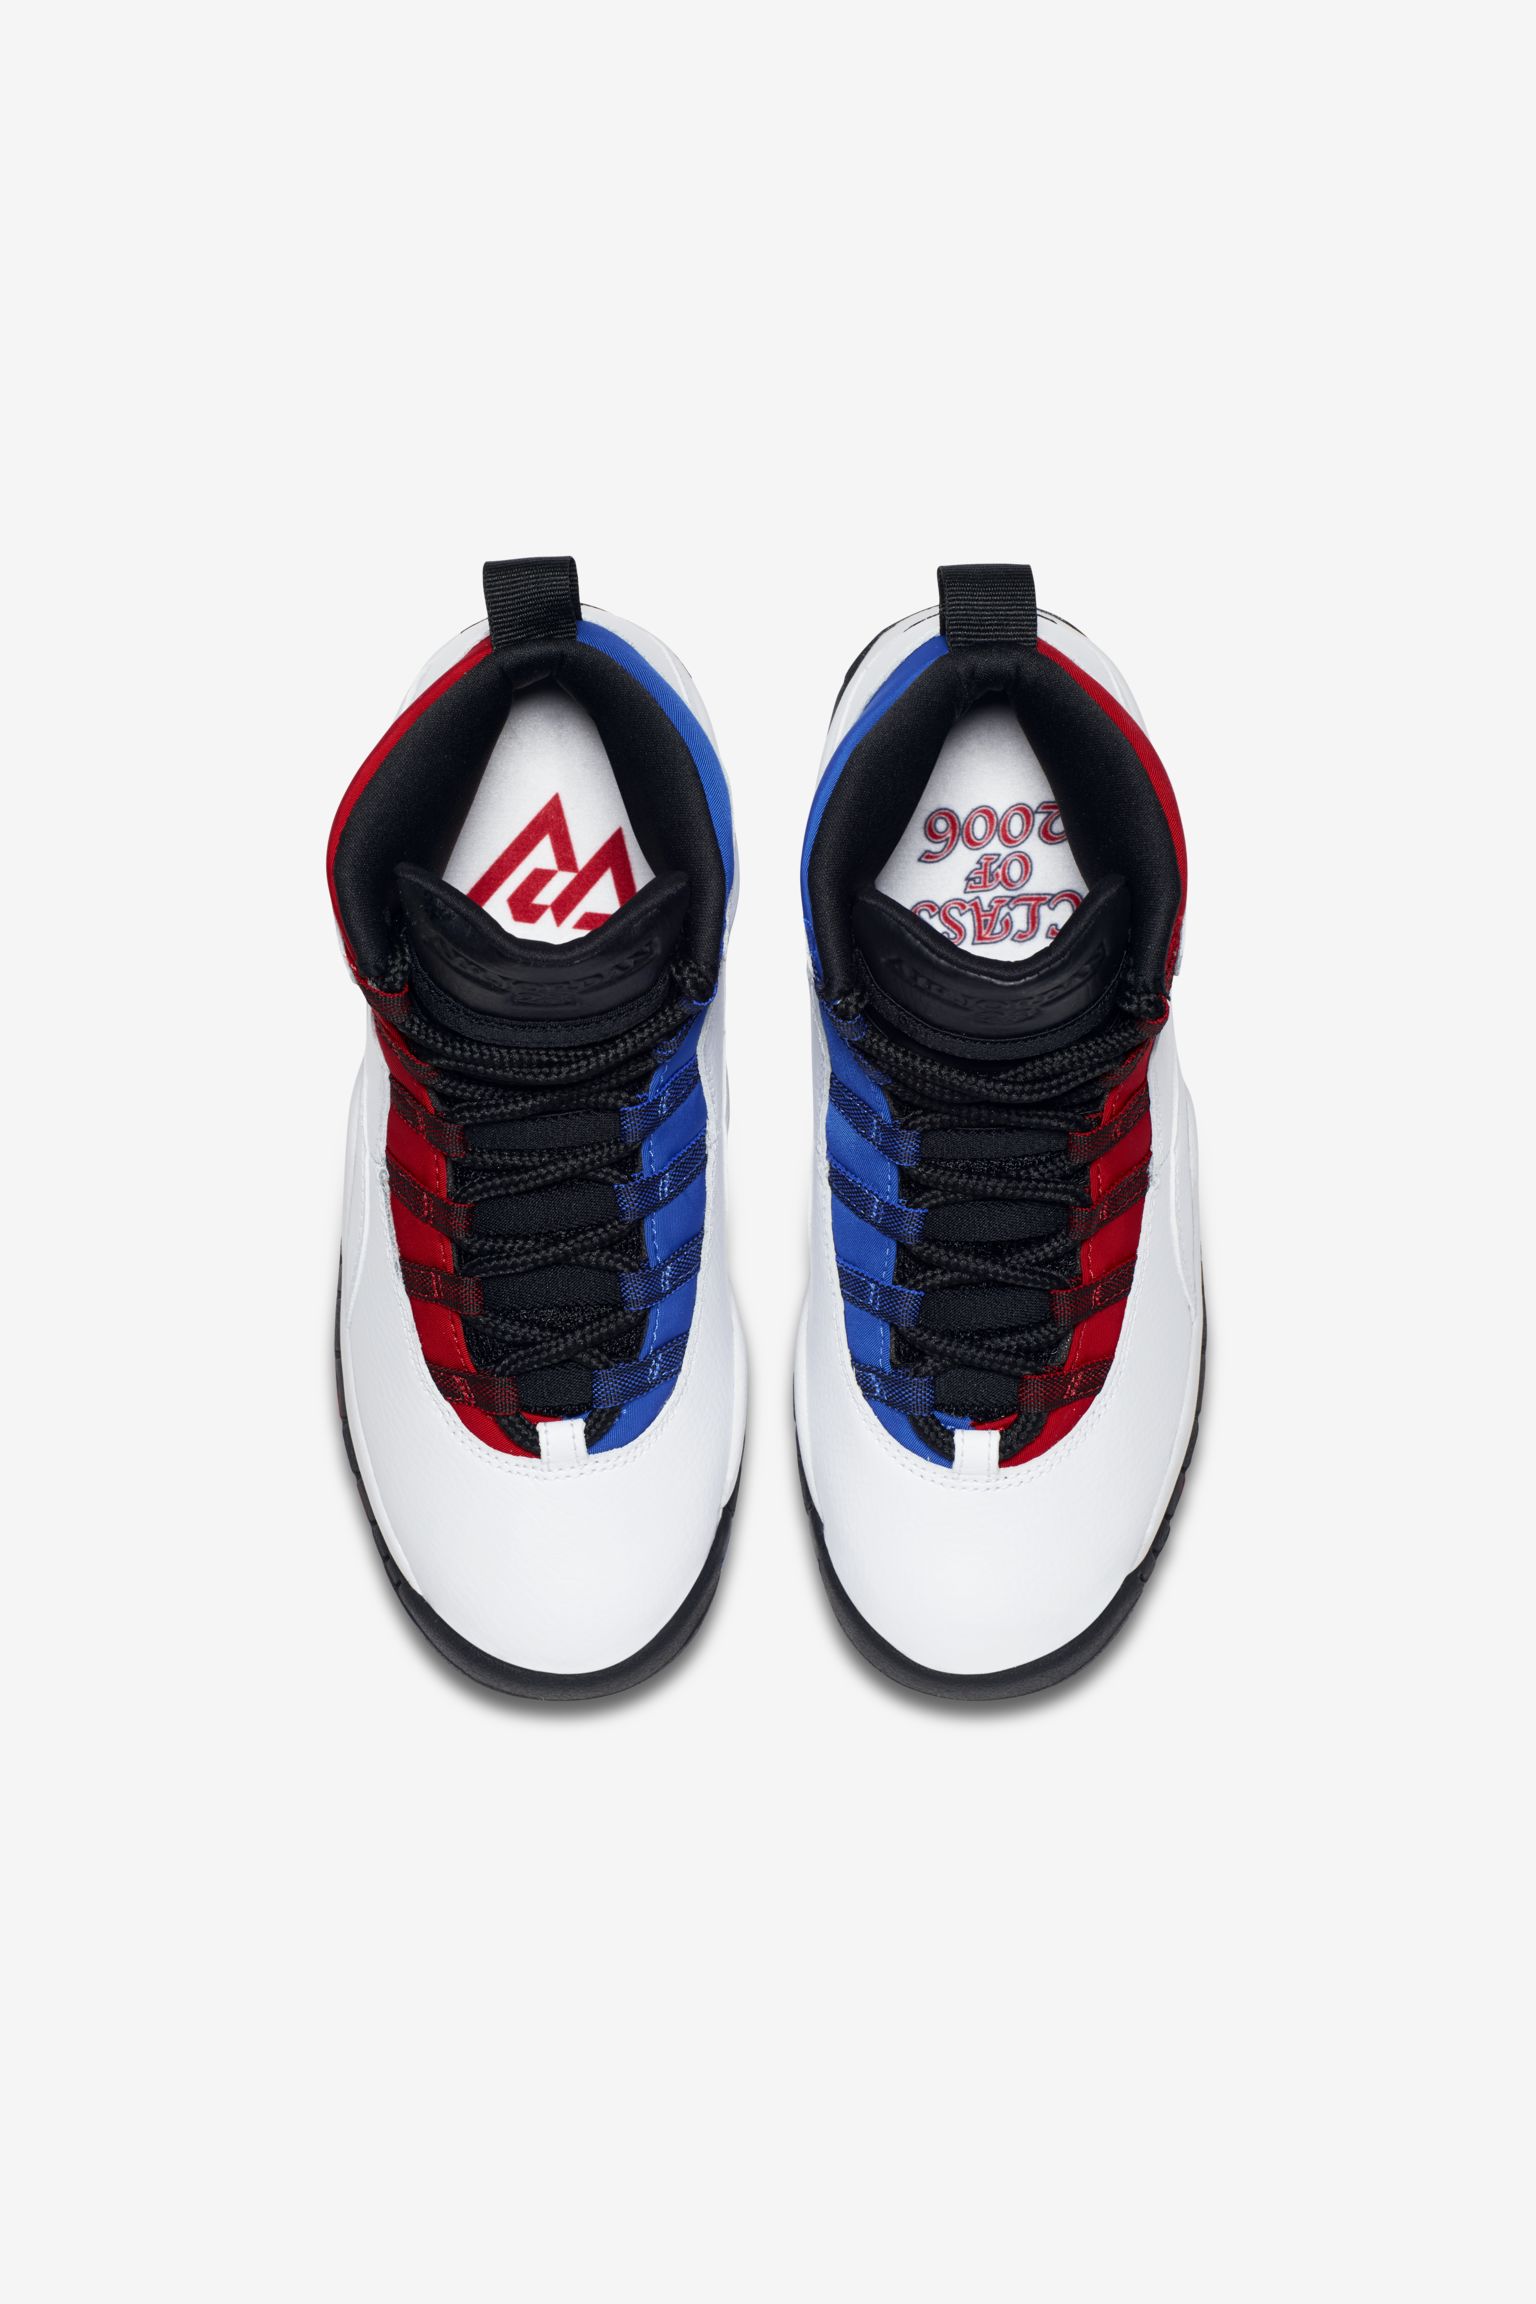 sadel pas sympati Air Jordan 10 'White & Varsity Red' Release Date. Nike SNKRS